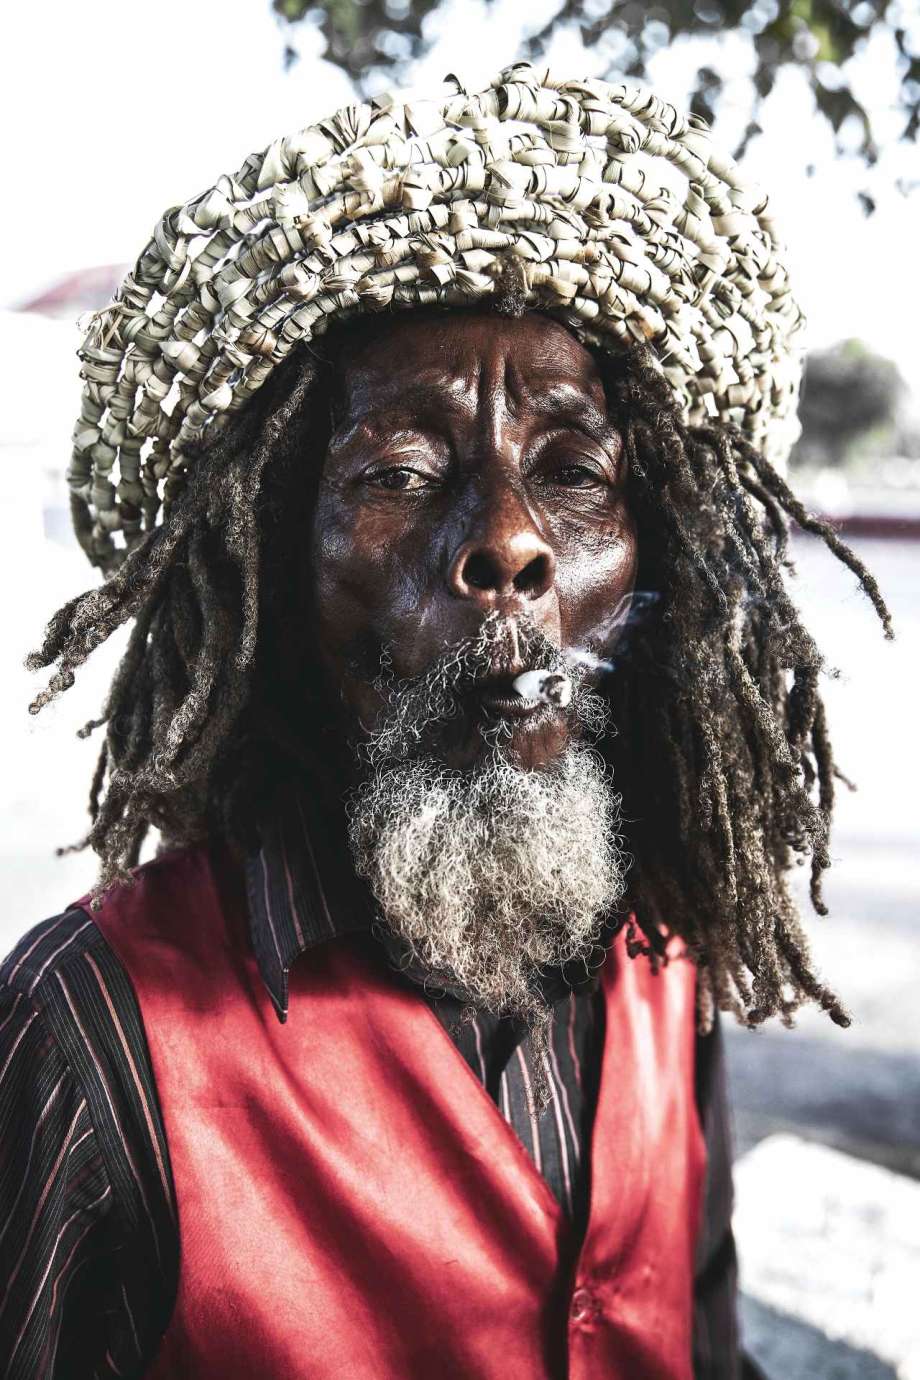 A photograph of a man smoking by artist Samantha Everette